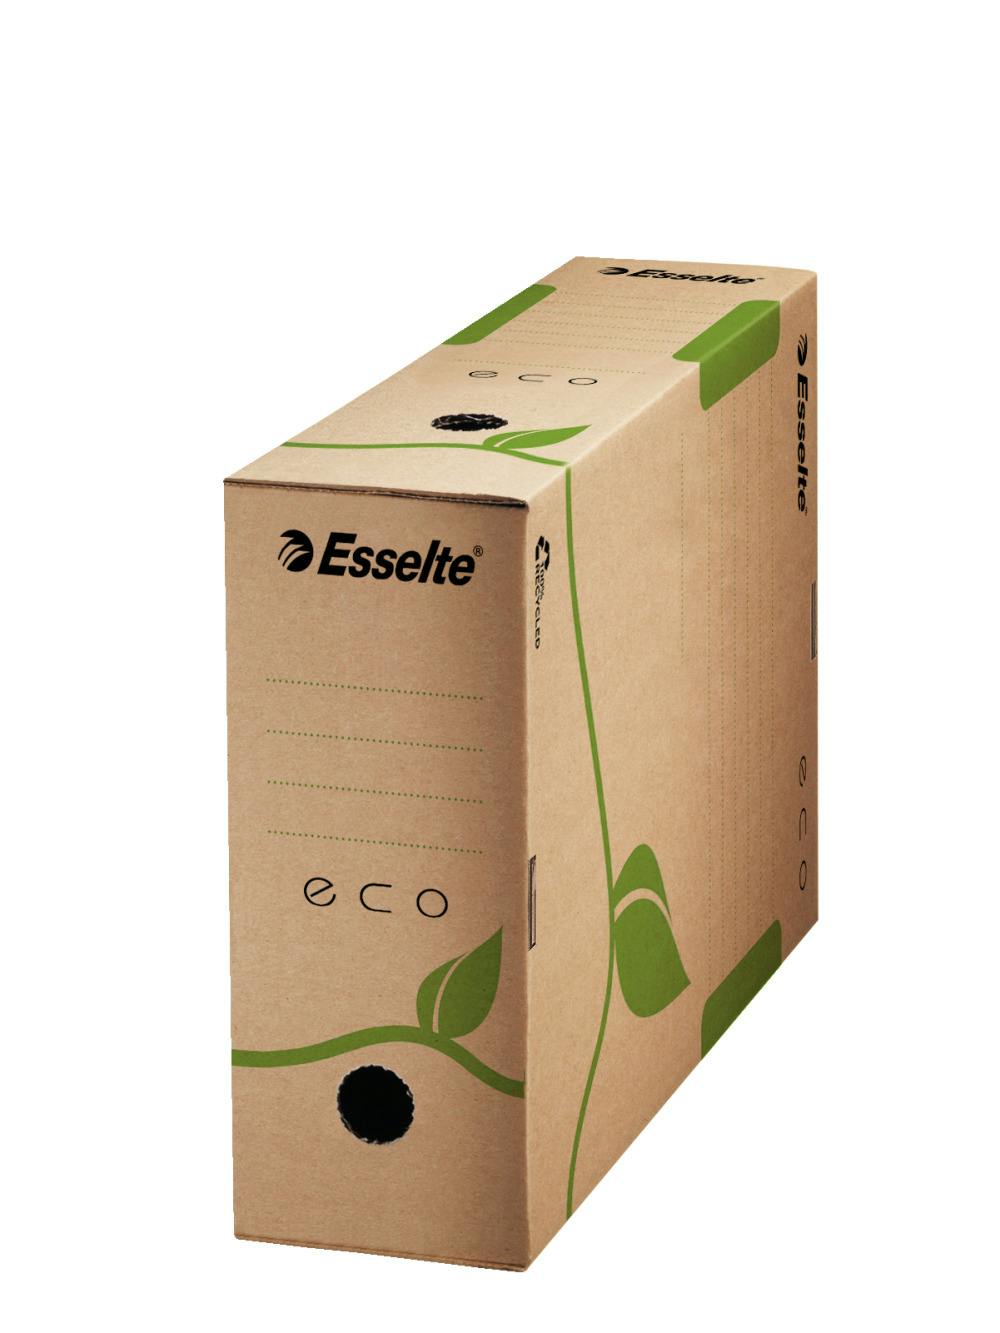 Esselte Ecobox Scatola Archivio Eco, Dorso 10 cm, Per formato A4, Cartone  riciclato al 100%, 10 x 32.7 x 23.3 cm, Marrone, 25 pezzi, 623917